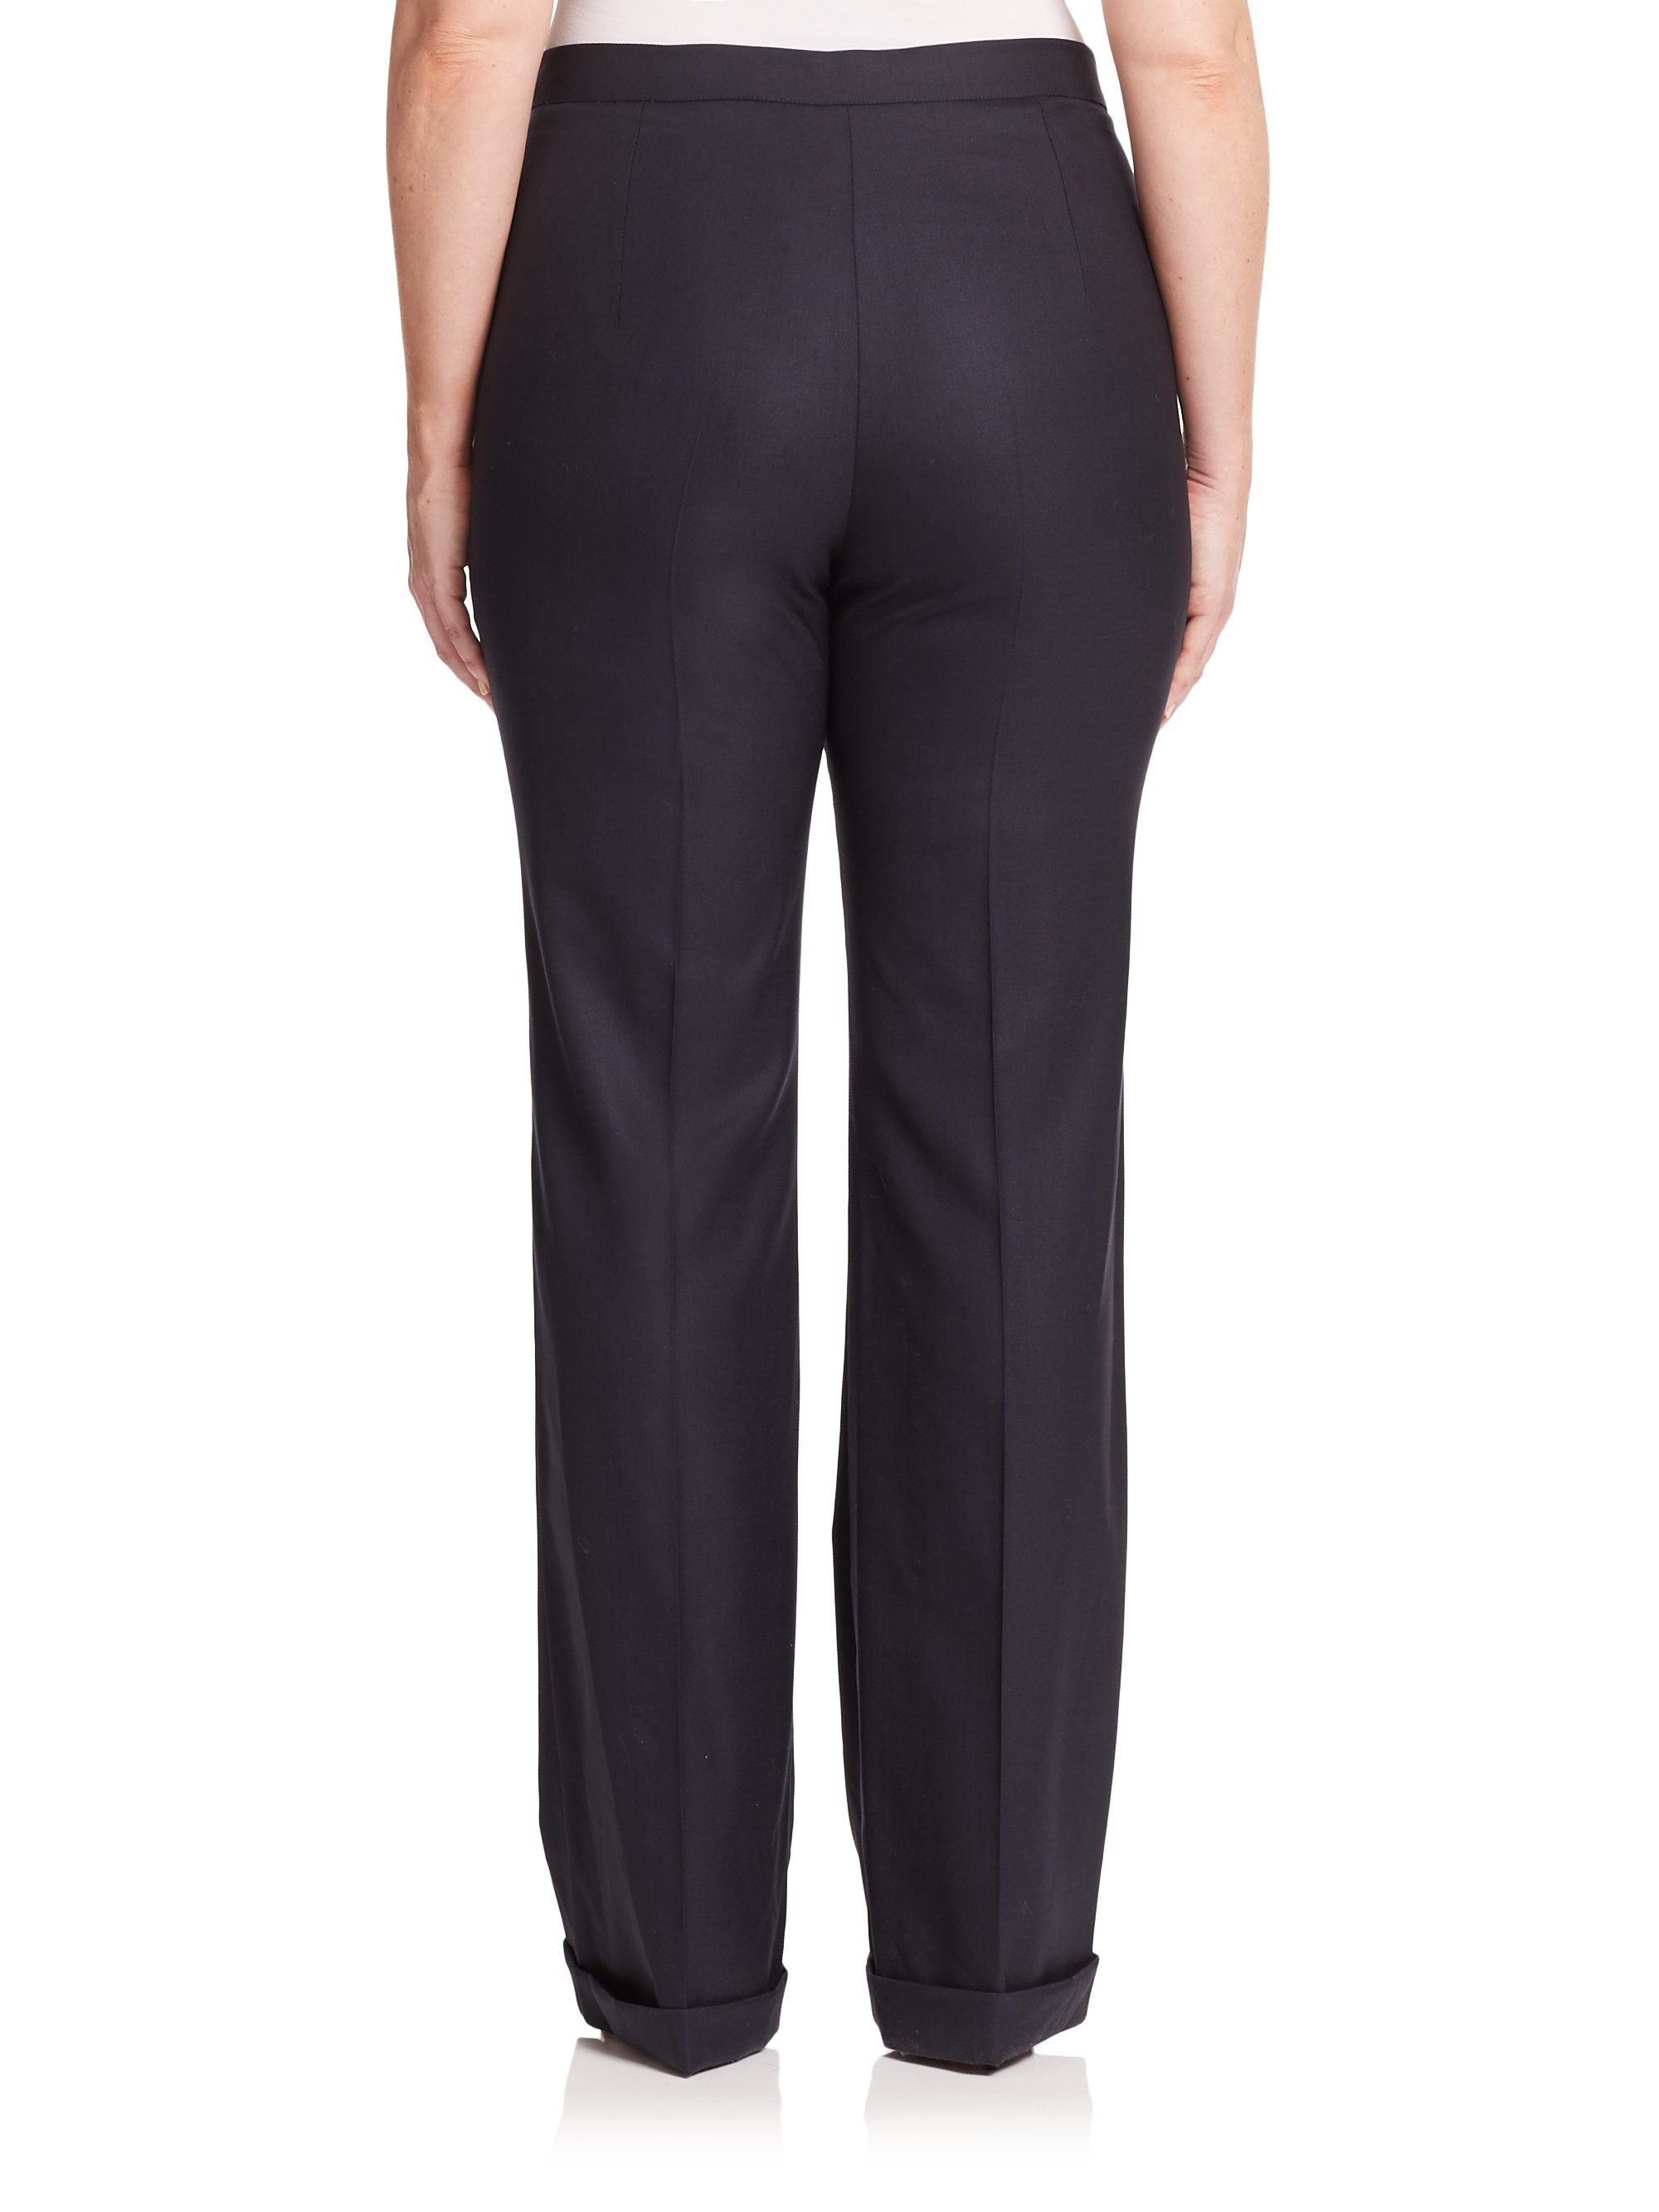 Lyst - Marina Rinaldi Wool & Silk Cuffed Pants in Black